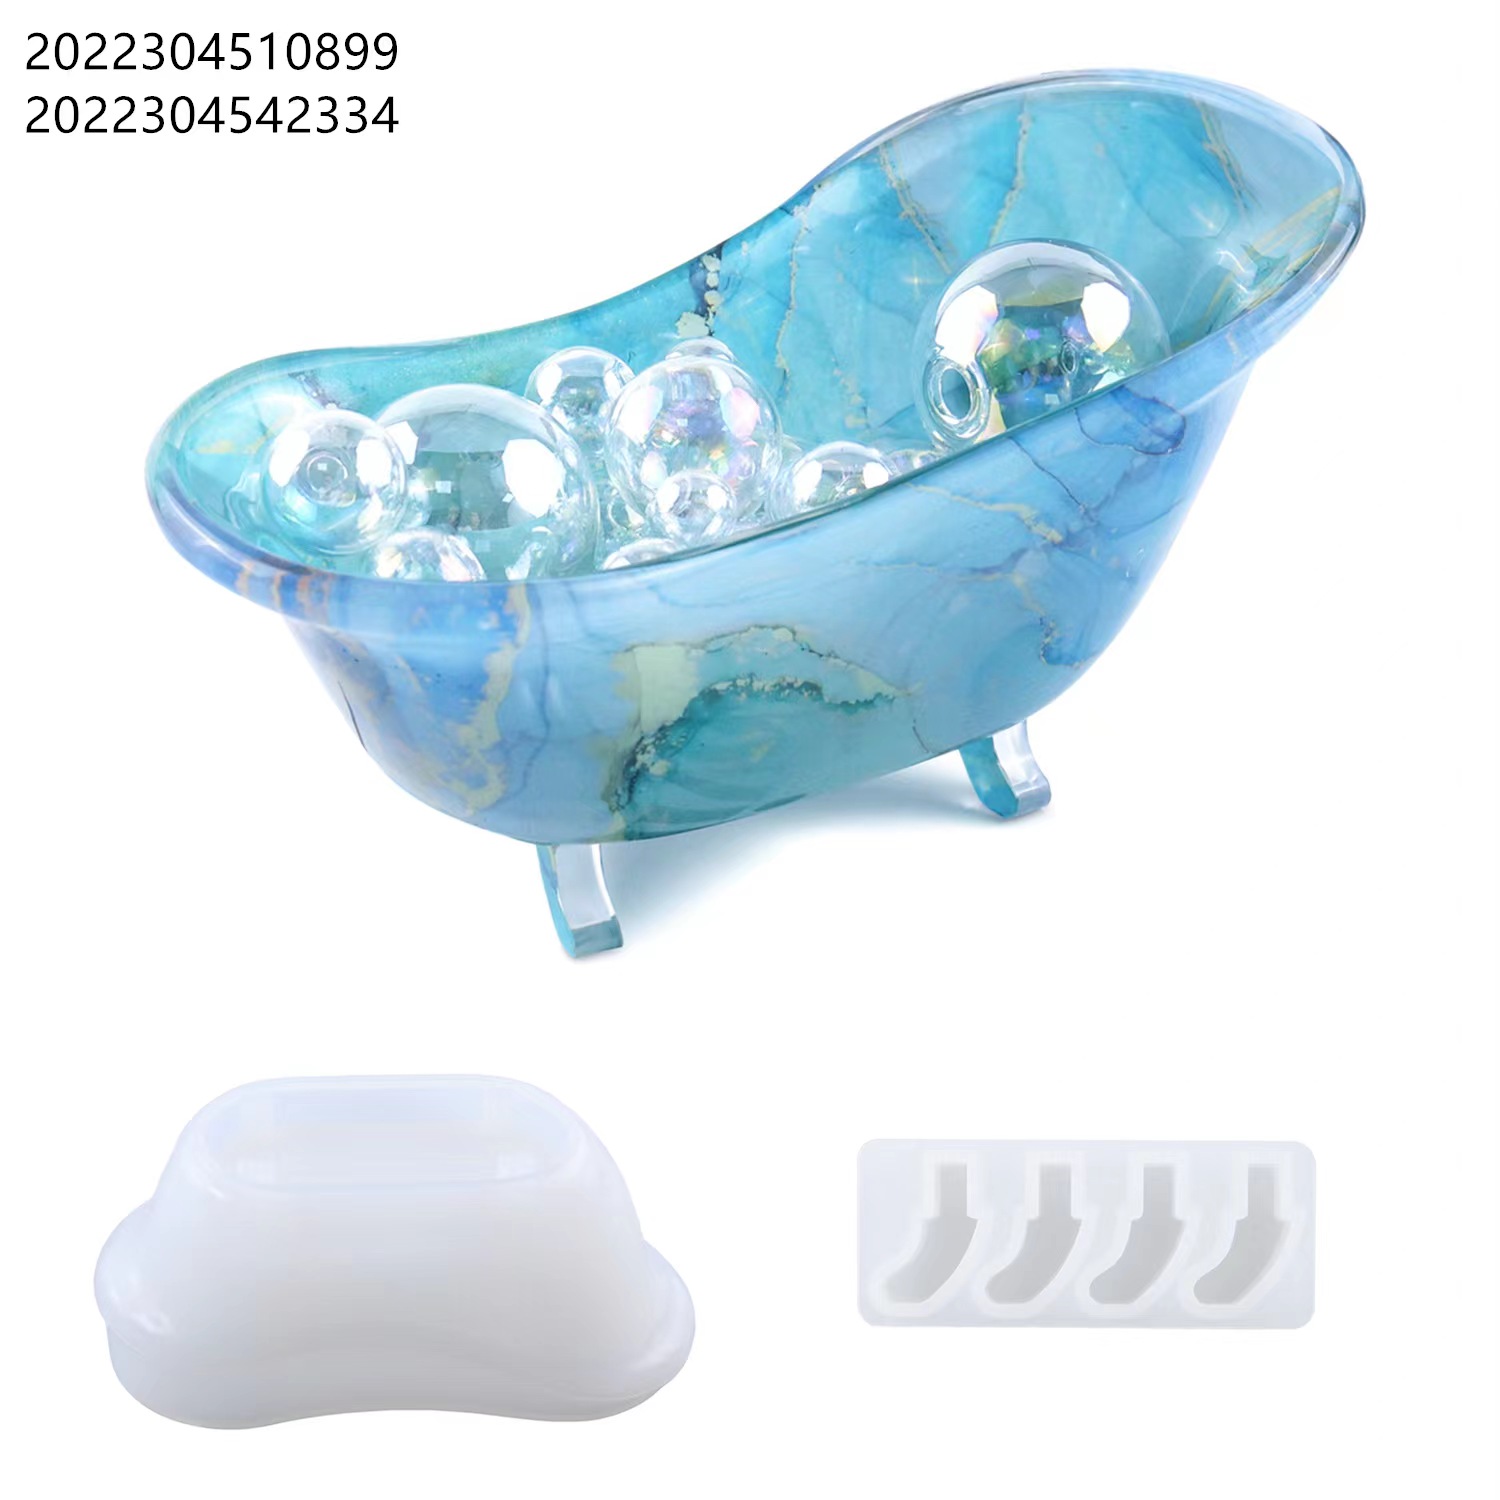 小染DIY滴胶水晶胶浴缸肥皂盒收纳盒托盘镜面硅胶模具手工材料